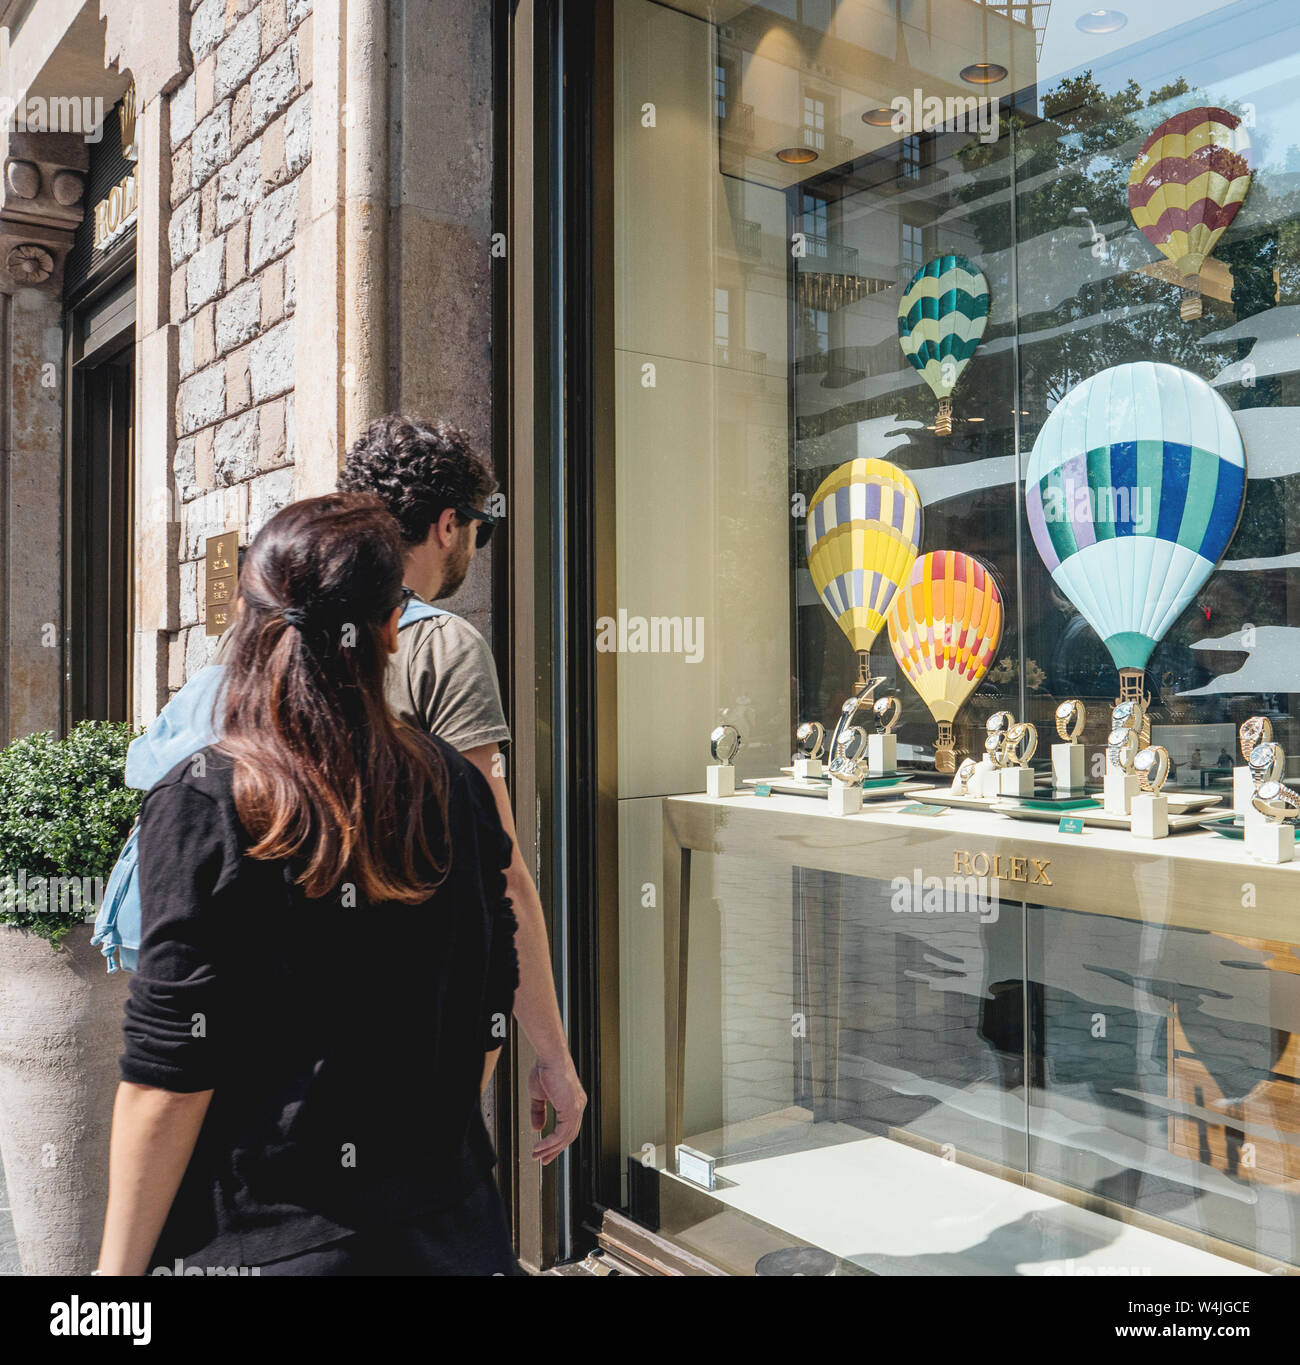 Barcelona, Spanien - Jun 1, 2018: Wohlhabende Paar Einkaufen für Geschenke letzte Sammlung von Luxus handgelenk Schweizer Uhren von Rolex Modell in der offiziellen Store Distributor store Showcase hergestellt Stockfoto